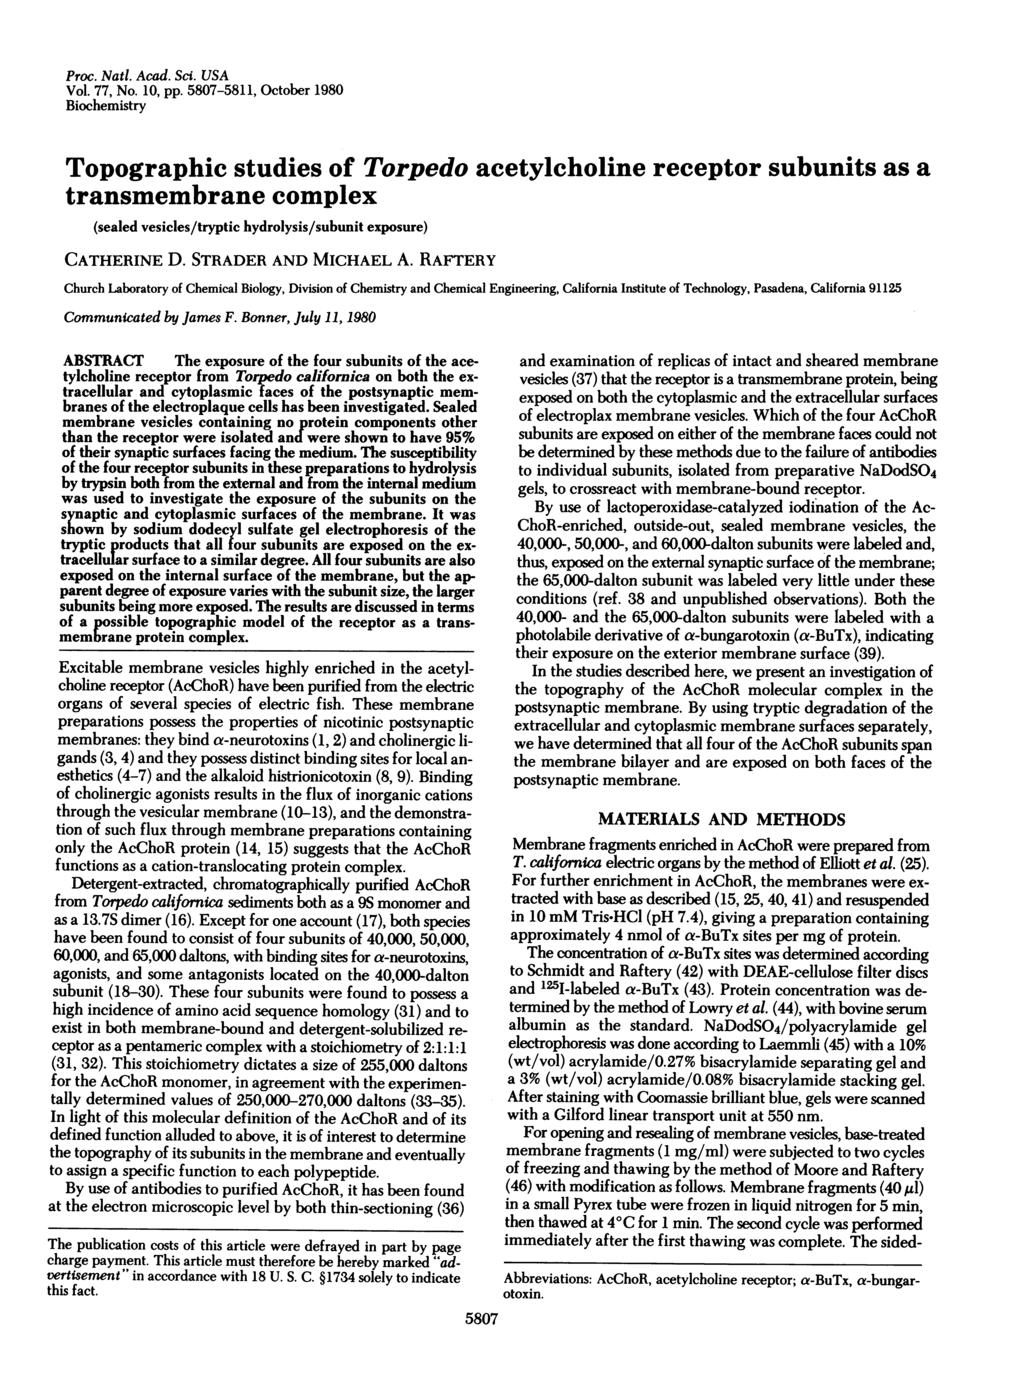 Proc. Natl. Acad. Sci. USA Vol. 77, No. 10, pp.